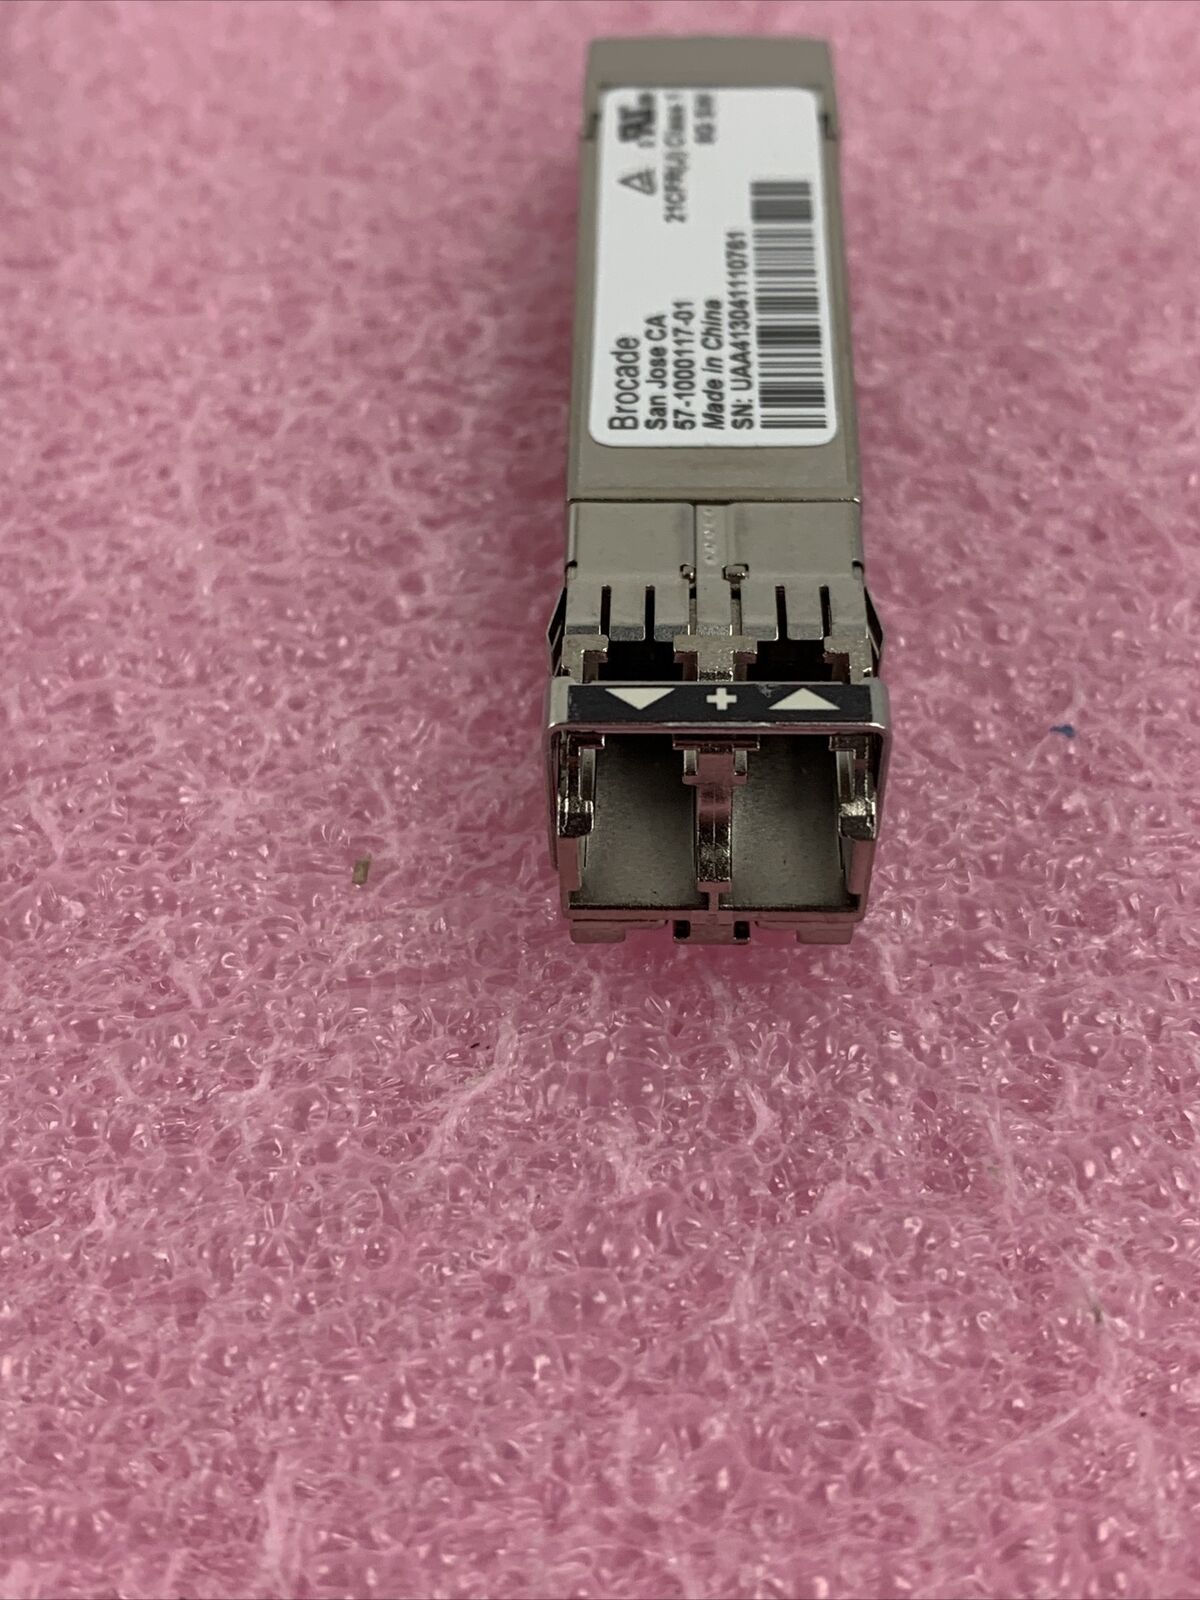 DELL K54X2 BROCADE 815 8GB SINGLE PORT PCI-E FIBRE CHANNEL HOST BUS ADAPTER